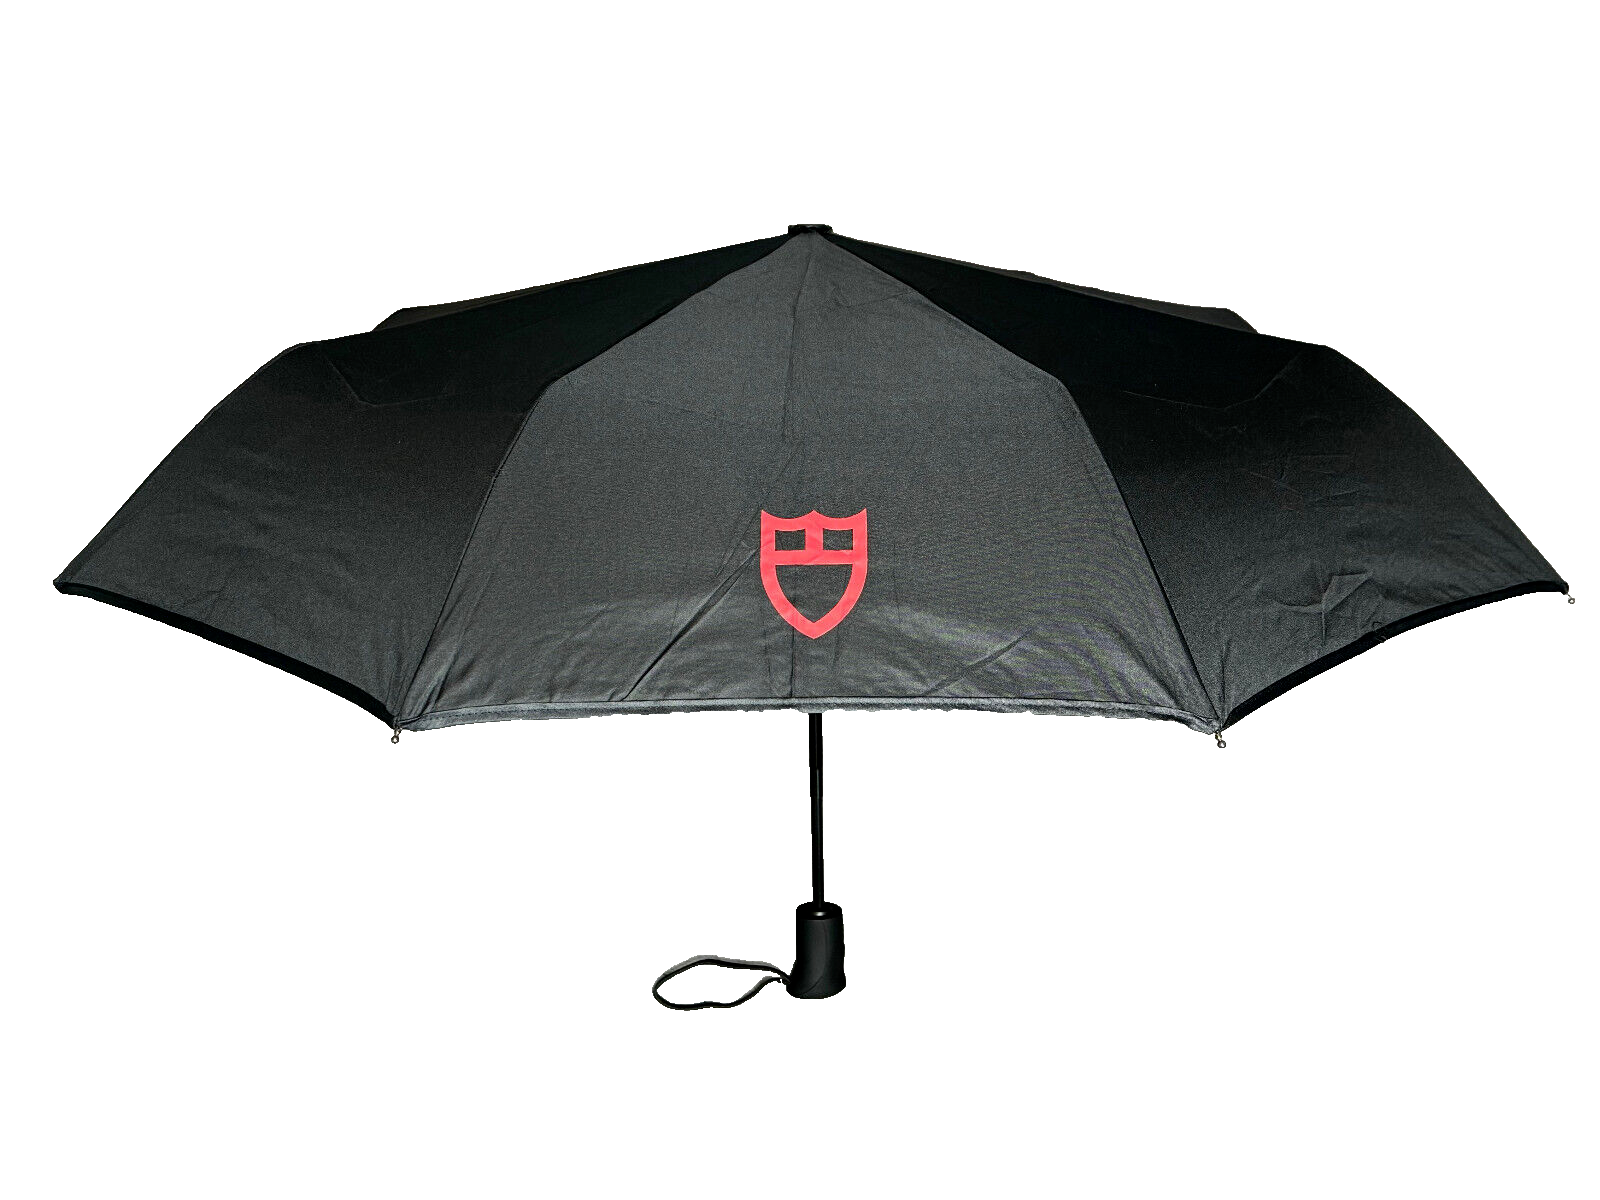 Tudor Regenschirm Schwarz